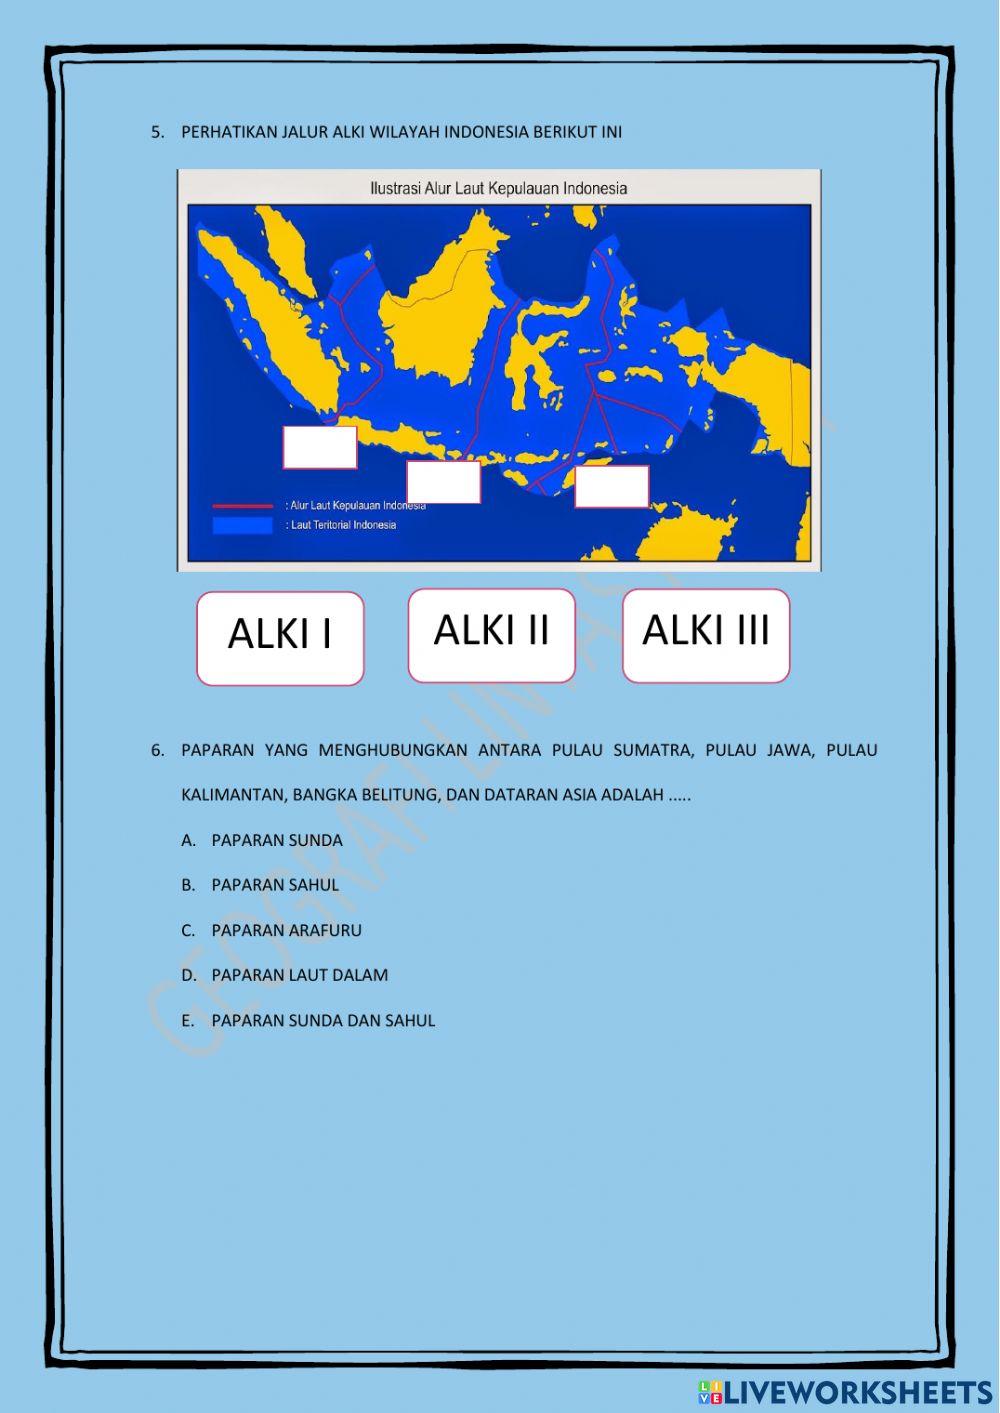 Indonesia sebagai poros maritim dunia